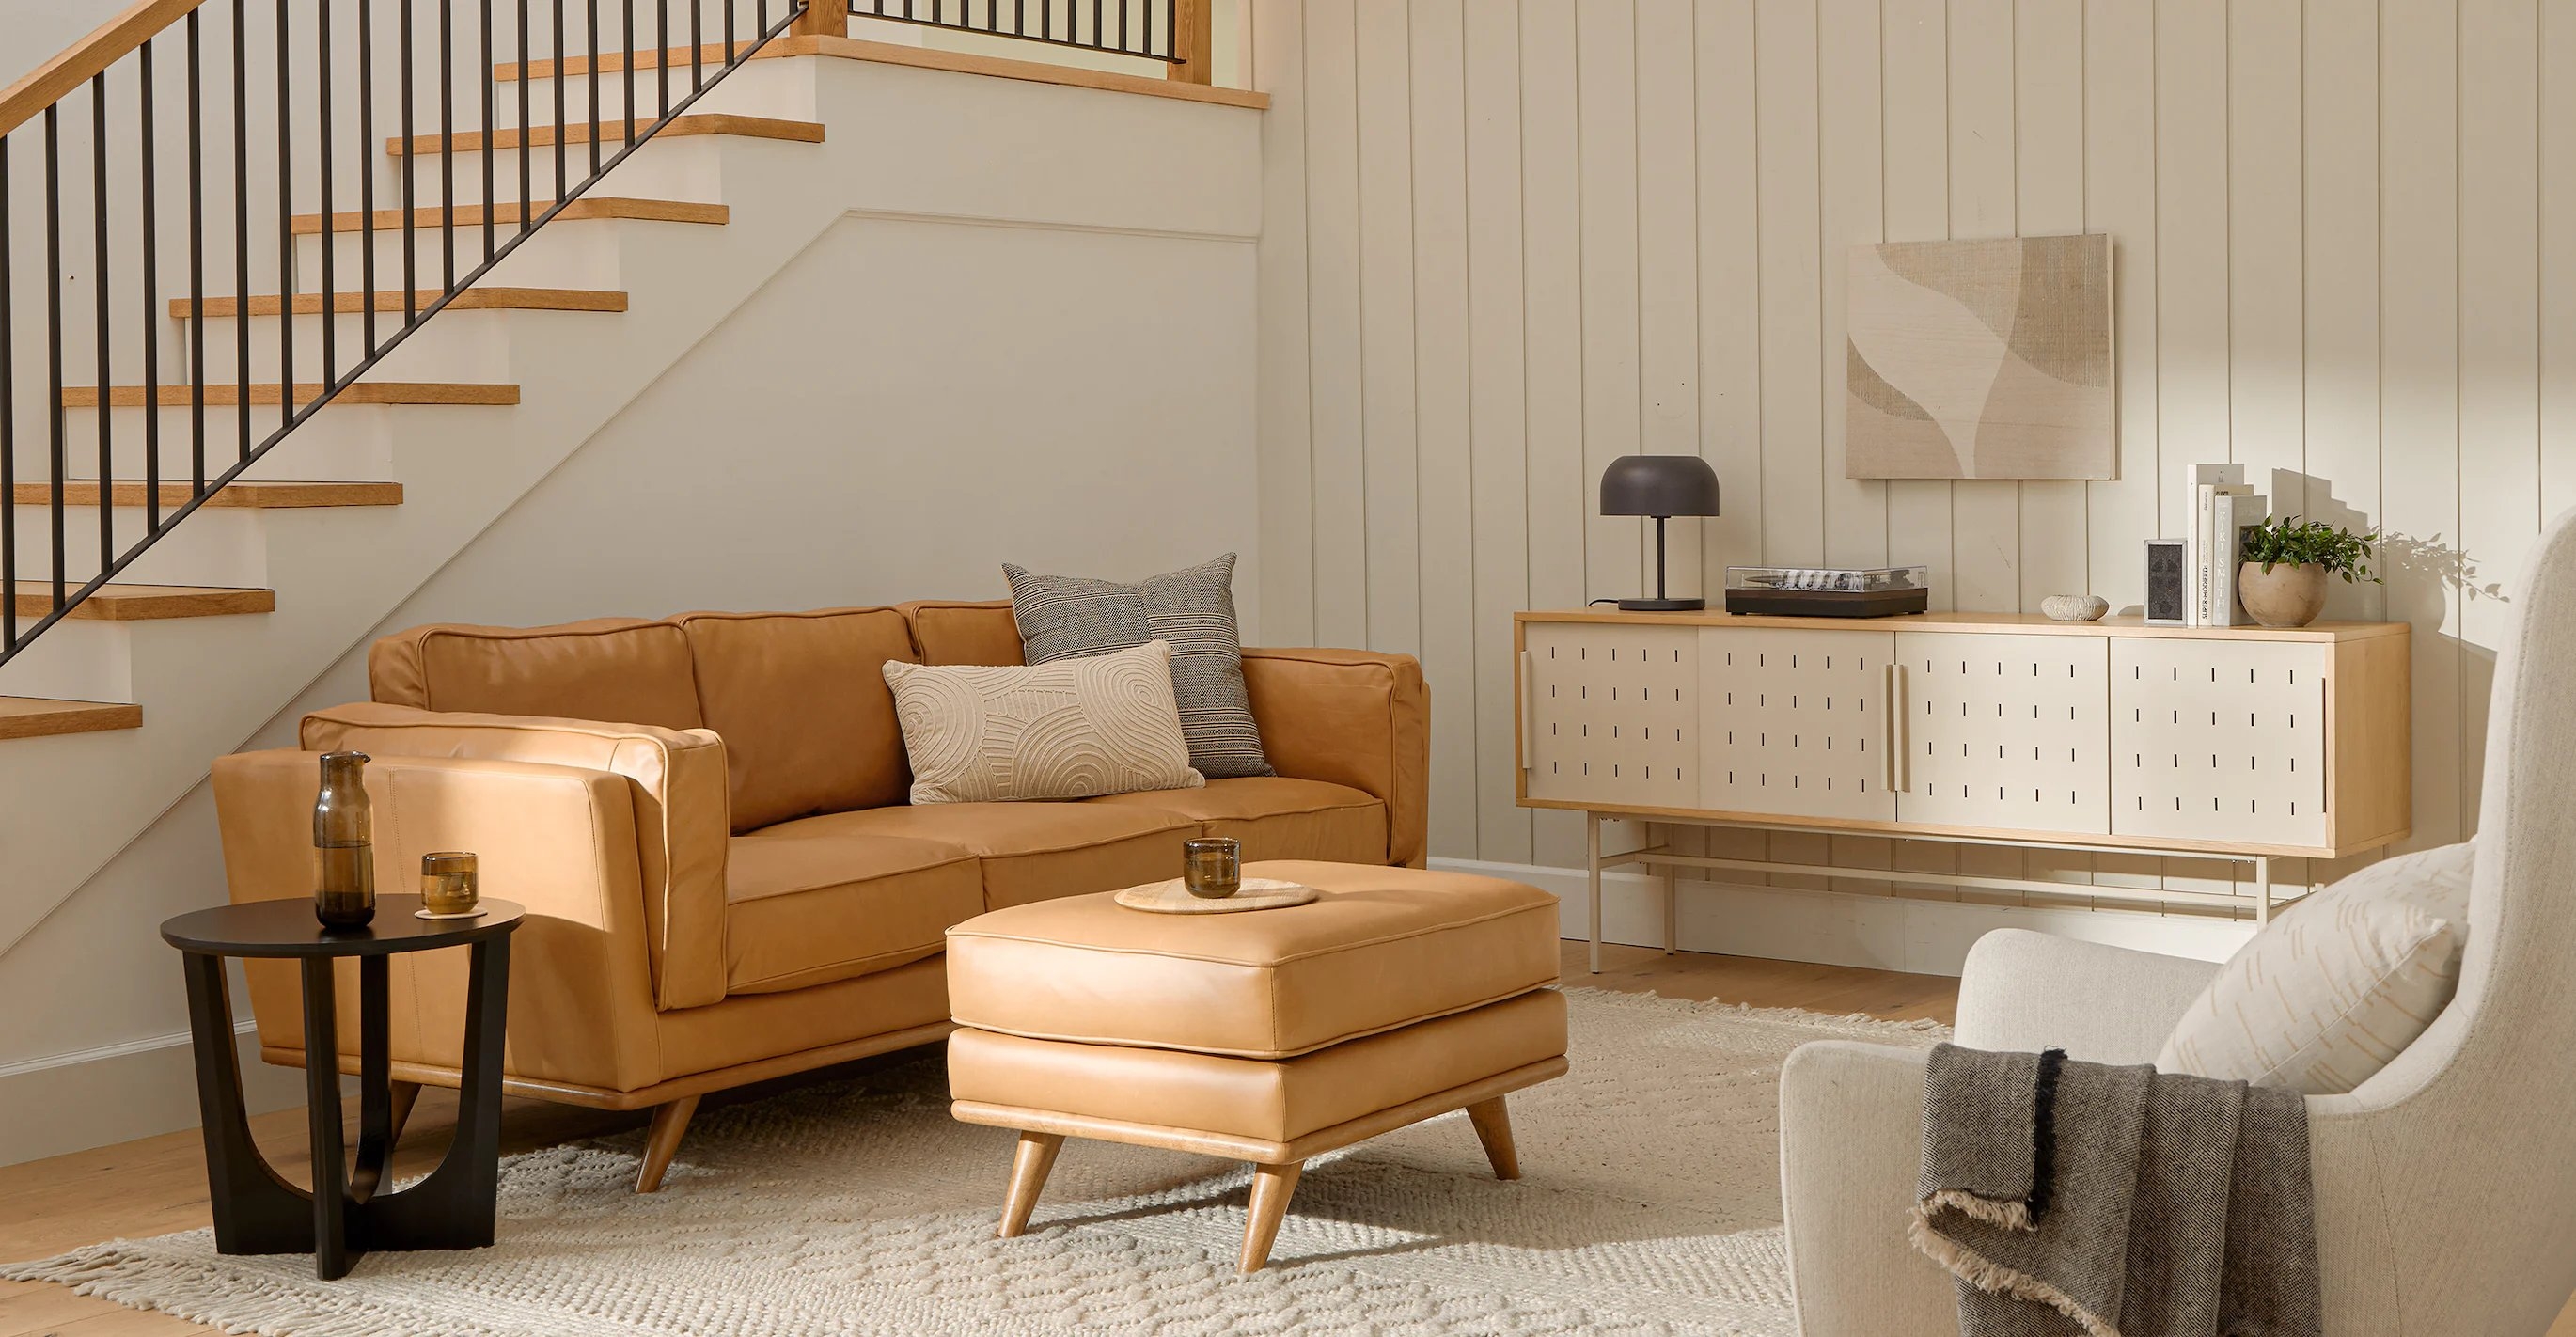 Timber Charme Tan Sofa - Image 2